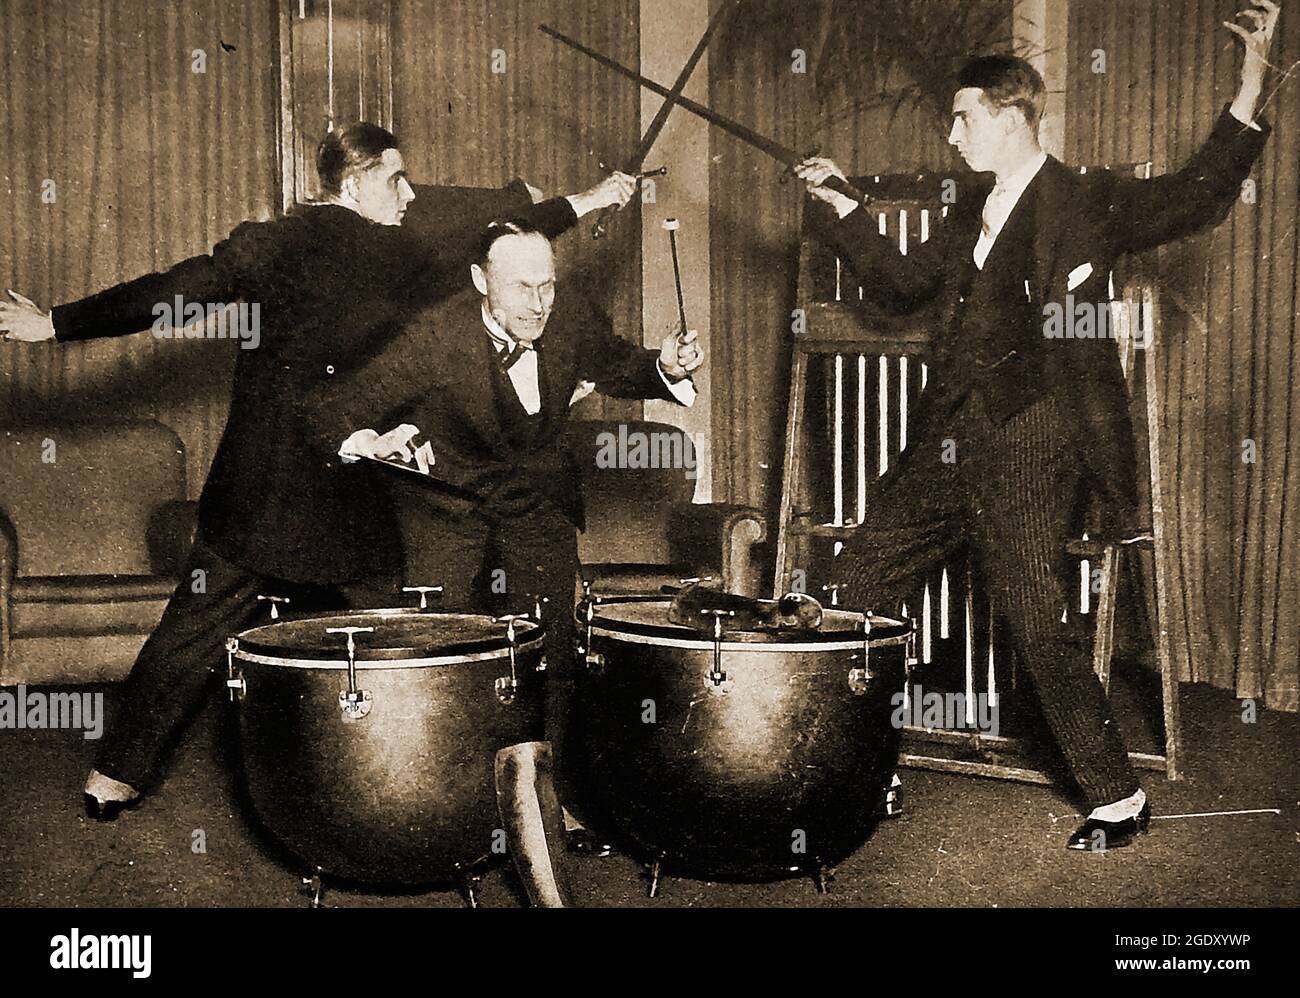 Effets sonores aux studios de radio de la BBC (British Broadcasting  Association), Londres, en 1925. Un combat d'épée avec des effets de  kettledrum. En novembre 1922, la BBC a lancé son premier